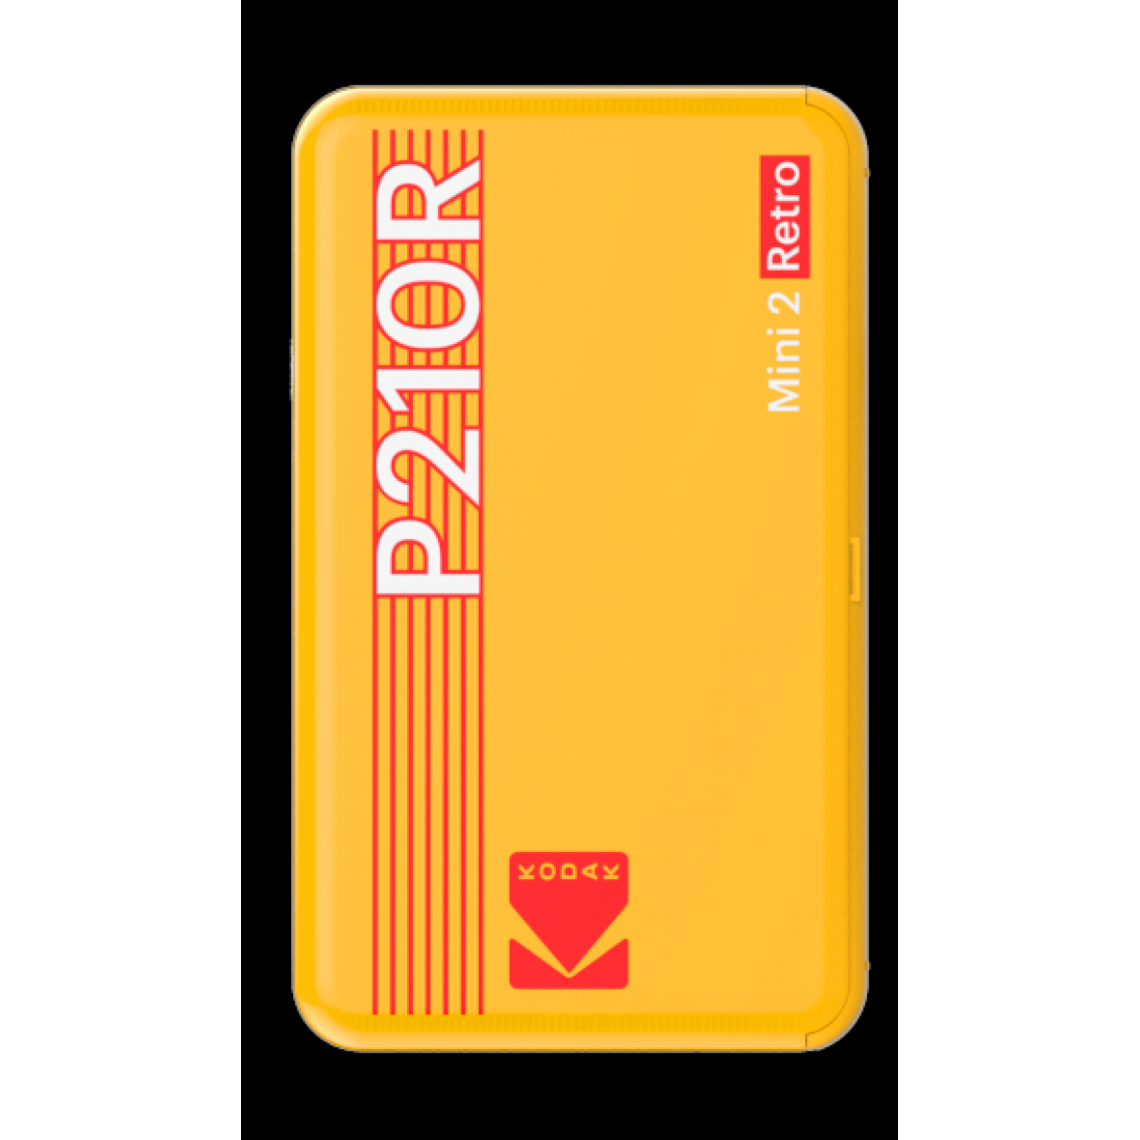 Kodak - KODAK Mini Retro 2 P210 - Mini Imprimante Connectée (Photo format Carte de Crédit 5,3 x 8,6 cm - 2,1 x 3,4'', Bluetooth, Batterie Lithium, Sublimation Thermique 4Pass, 8 photos incluses) Jaune-Jaune-2.1 x 3.4'' - Imprimantes d'étiquettes